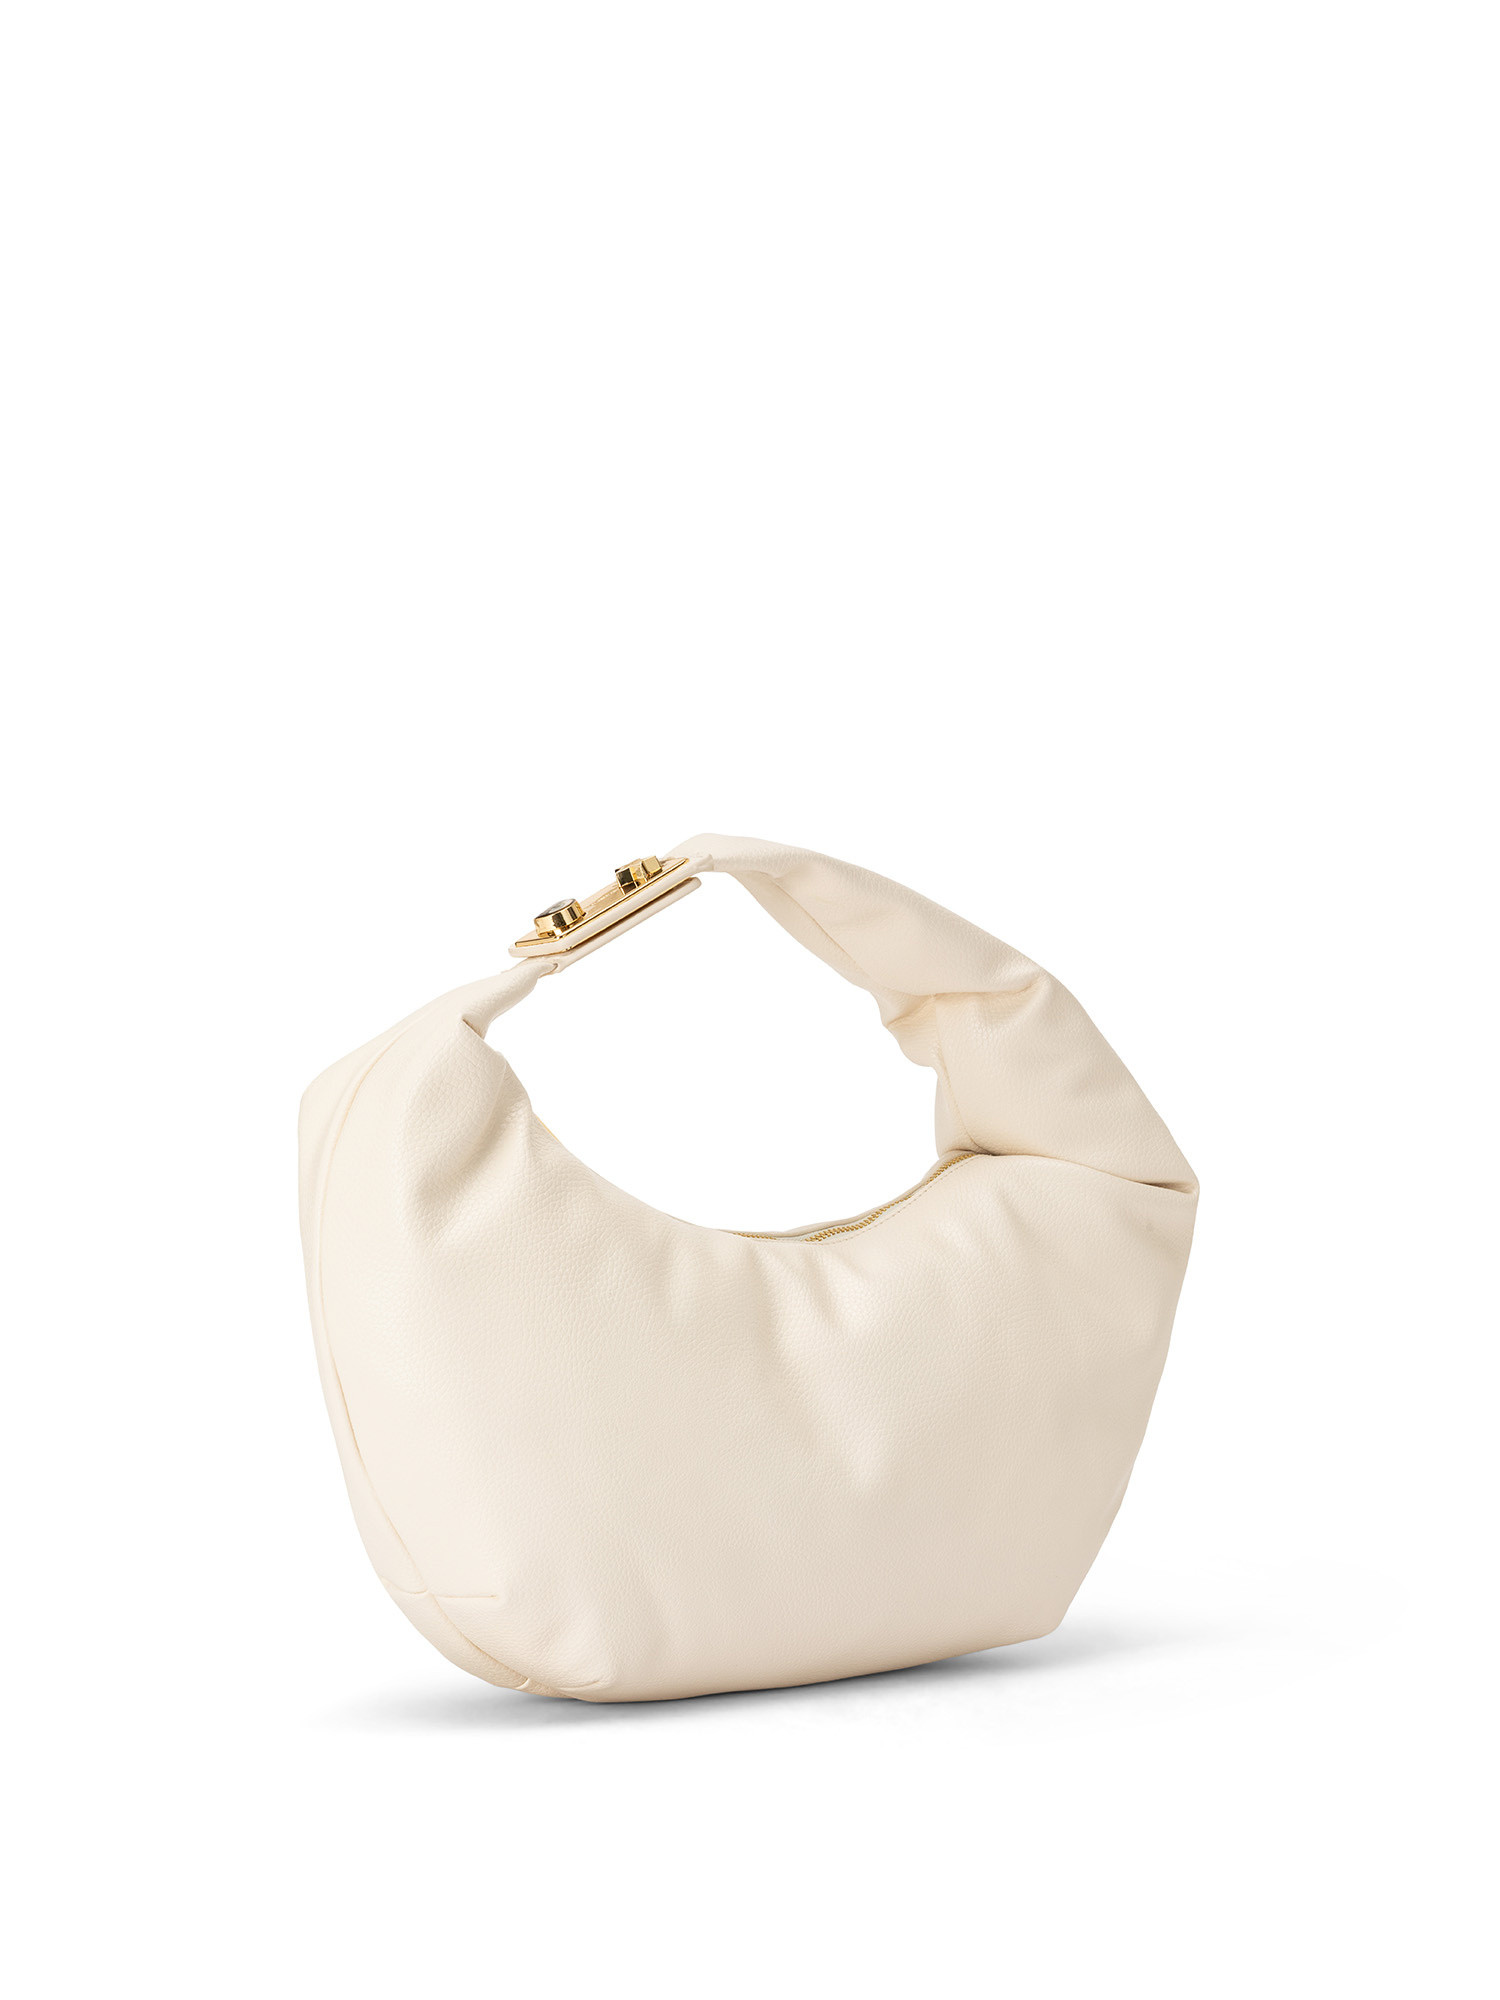 Soft shoulder bag with shoulder strap, White, large image number 1